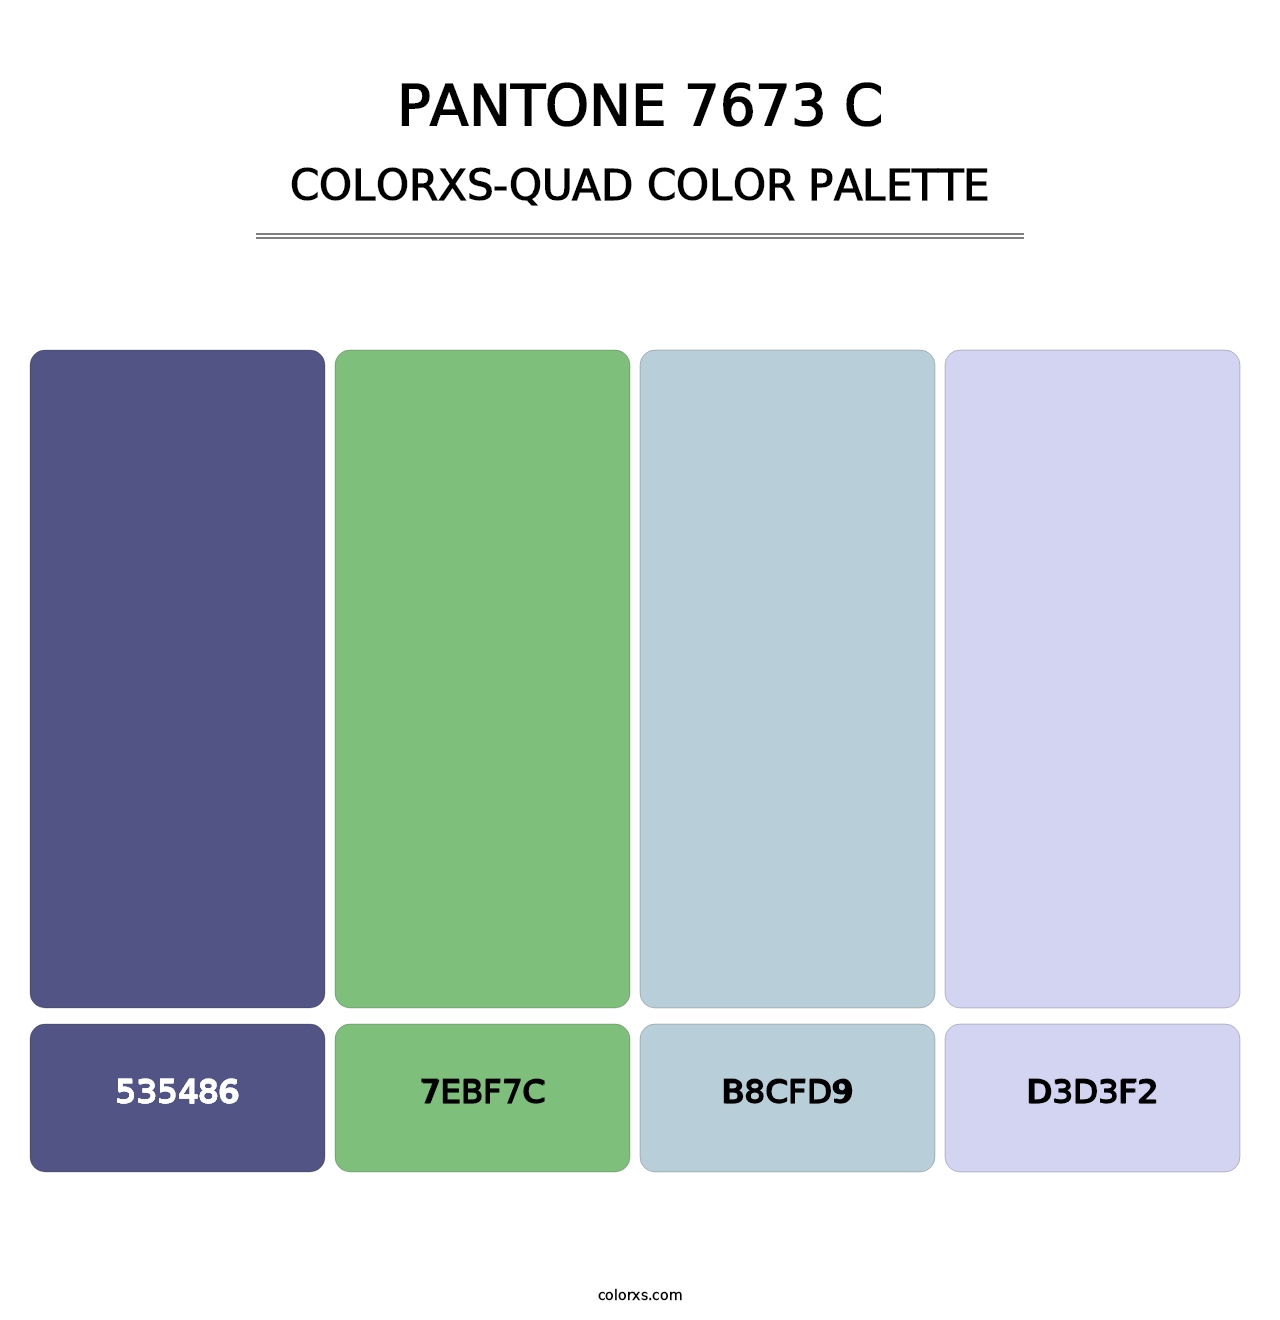 PANTONE 7673 C - Colorxs Quad Palette